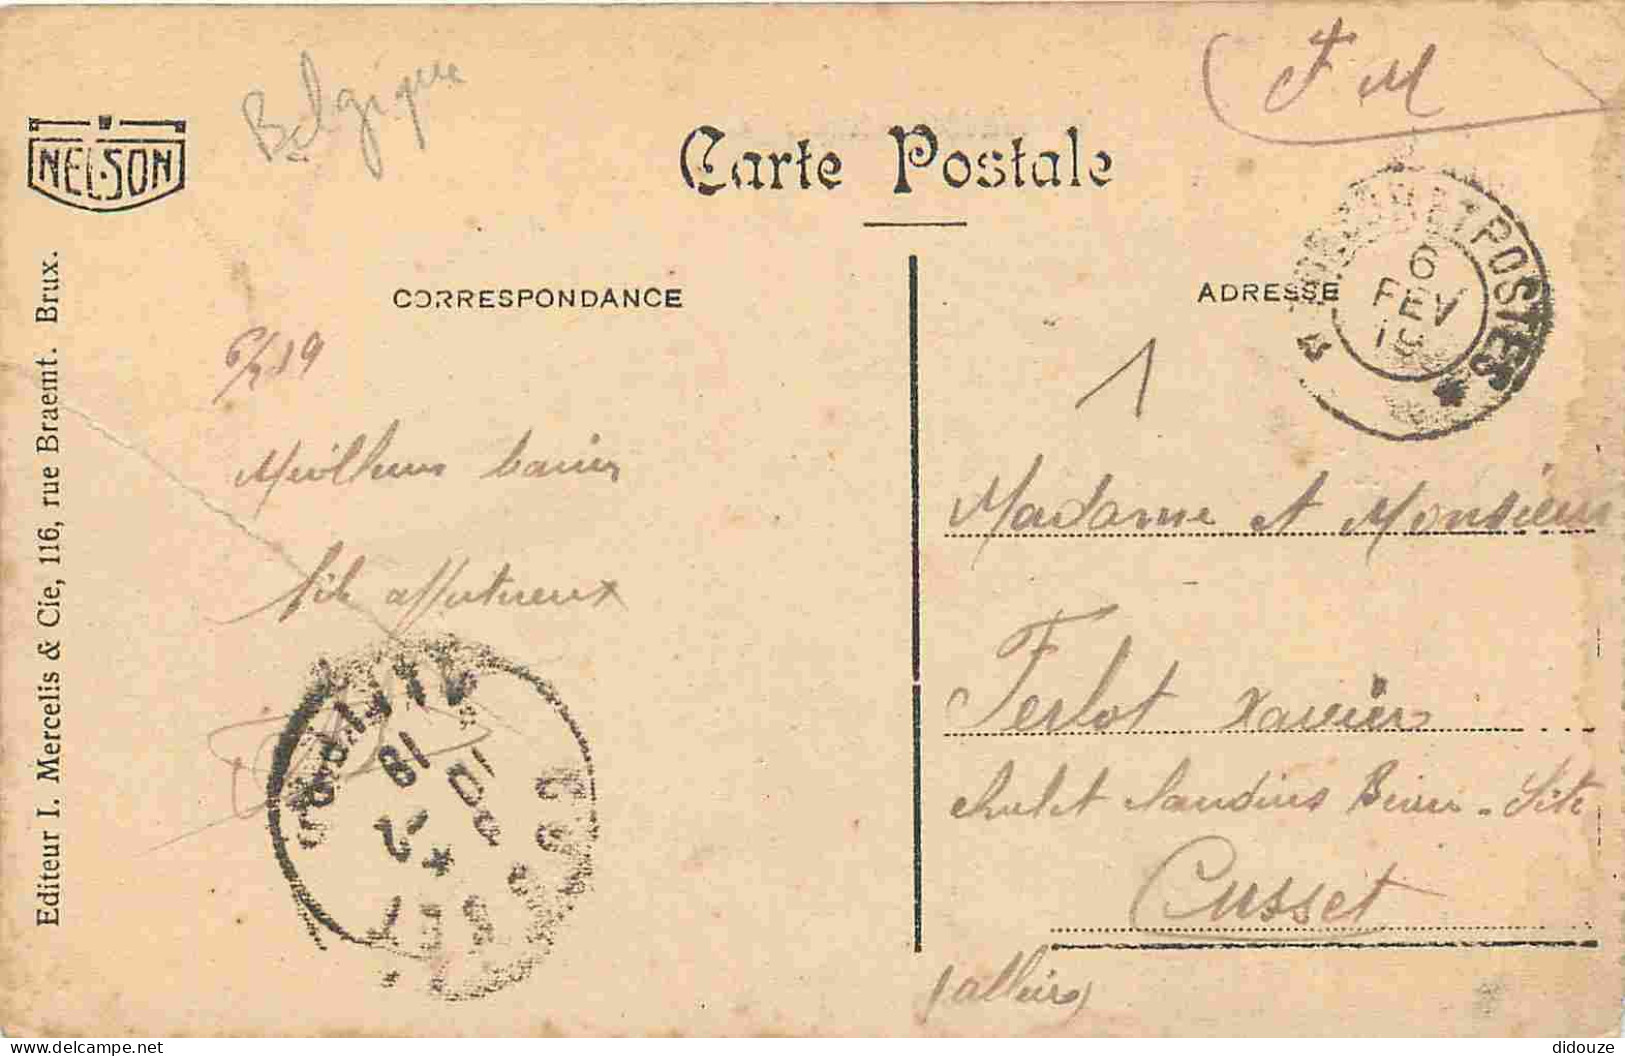 Pays - Belgique - Virton - Panorama - CPA - Oblitération Ronde De 1919 - Voir Scans Recto-Verso - Virton